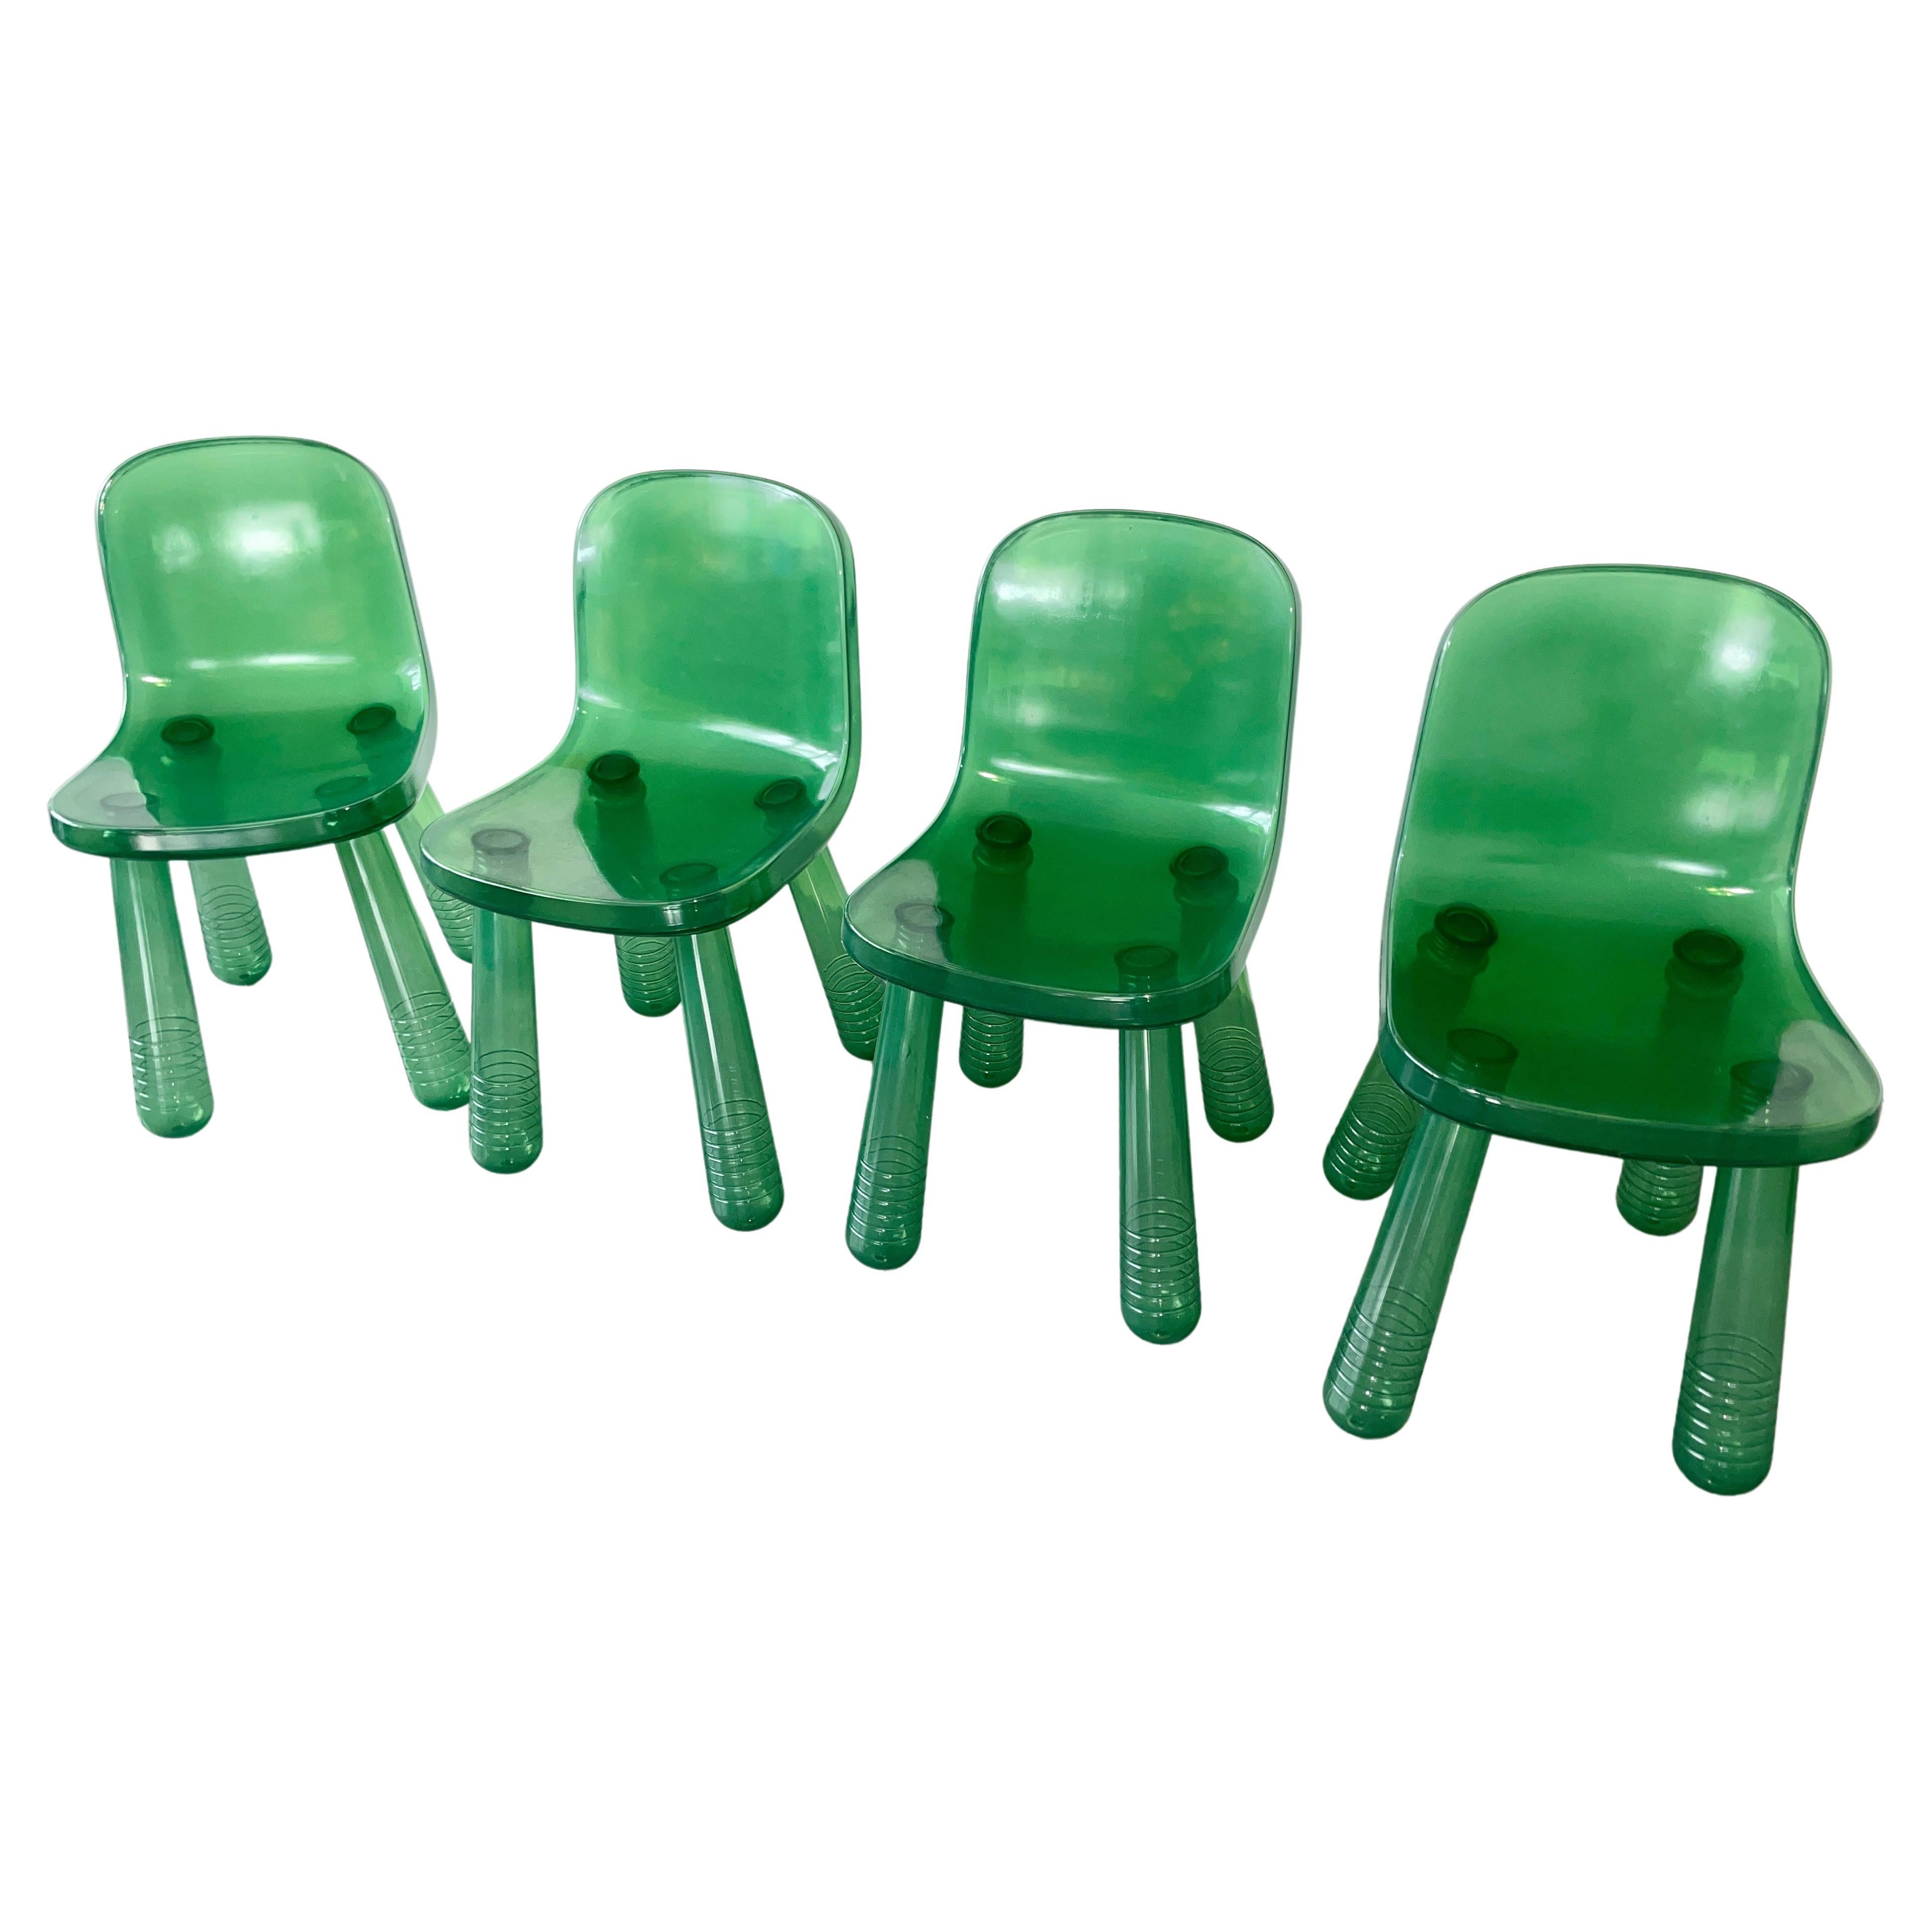 Funkelnder Stuhl
2010 präsentierte der niederländische Designer Marcel Wanders auf dem Salone Internasional del Mobile einen Stuhl, der mit der gleichen Blasformtechnik hergestellt wurde, die auch für die Herstellung von Wasserflaschen verwendet